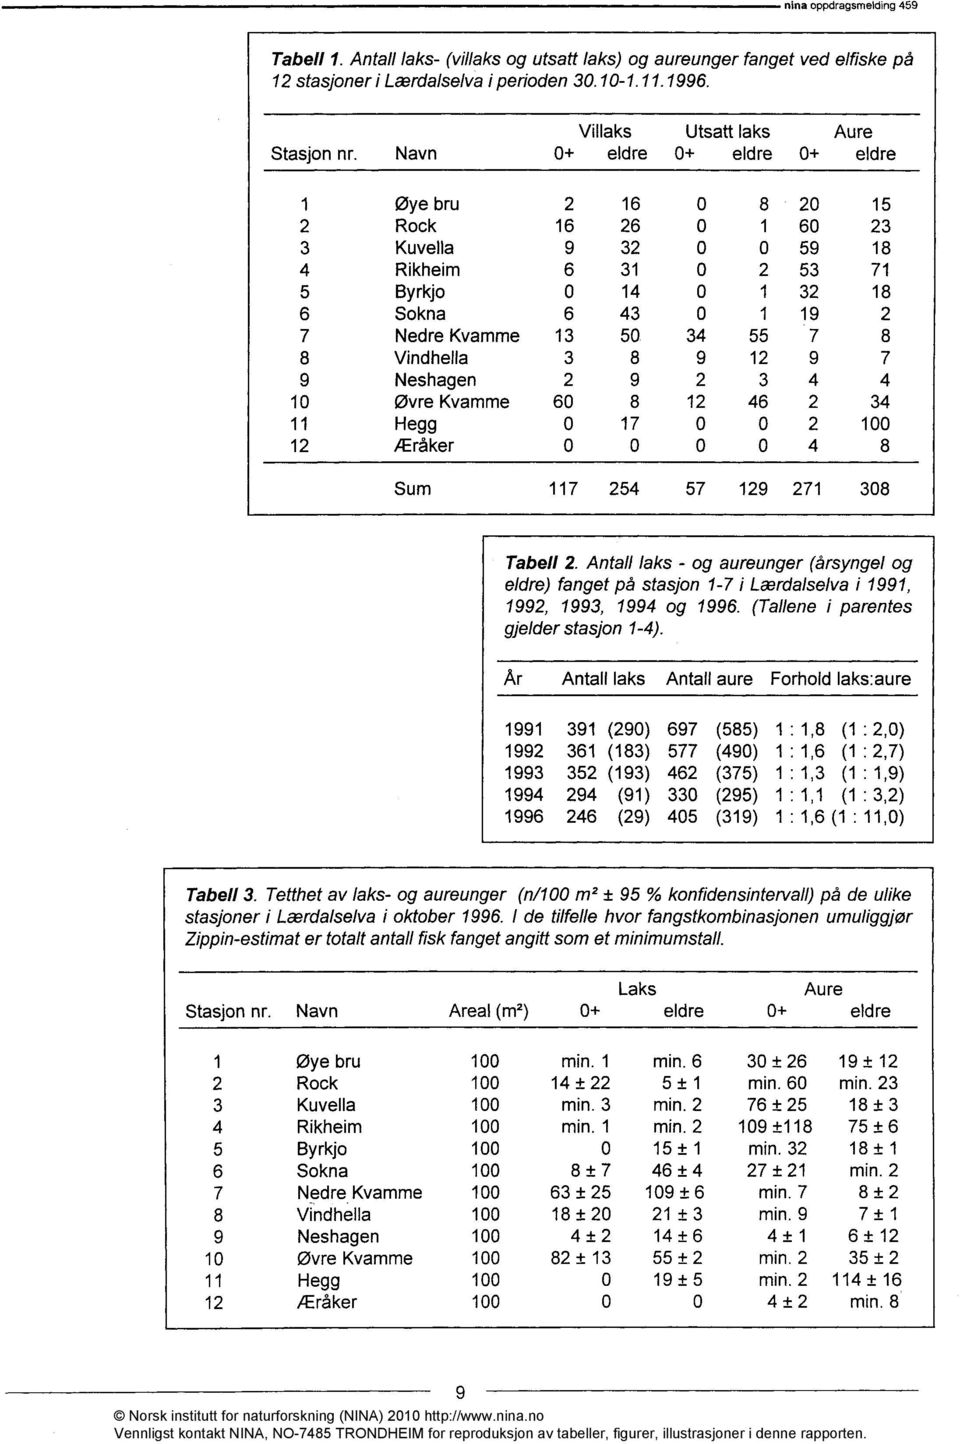 År Antall laks Antall aure Forhold laks:aure Tabell 3. Tetthet av laks- og aureunger (n/100 m2 ± 95 % konfidensintervall) på de ulike stasjoner i Lærdalselva i oktober 1996.